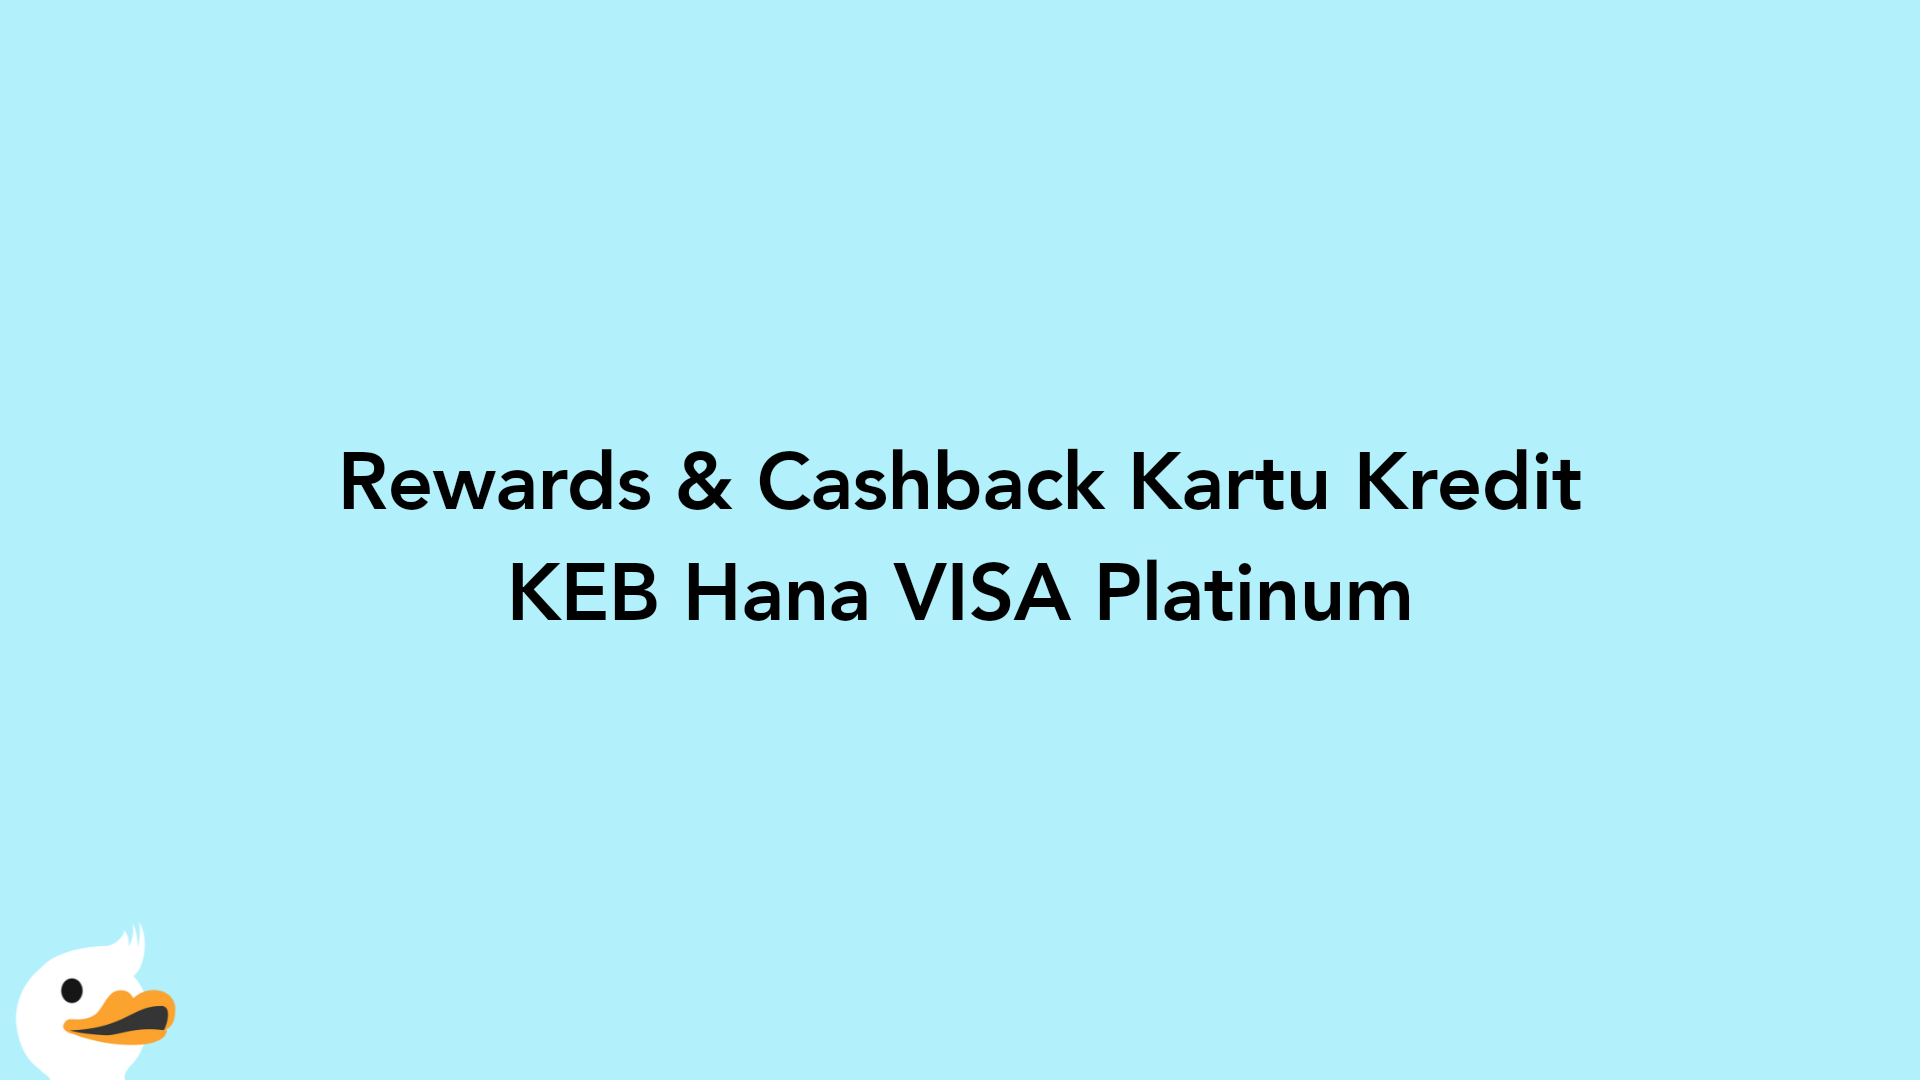 Rewards & Cashback Kartu Kredit KEB Hana VISA Platinum